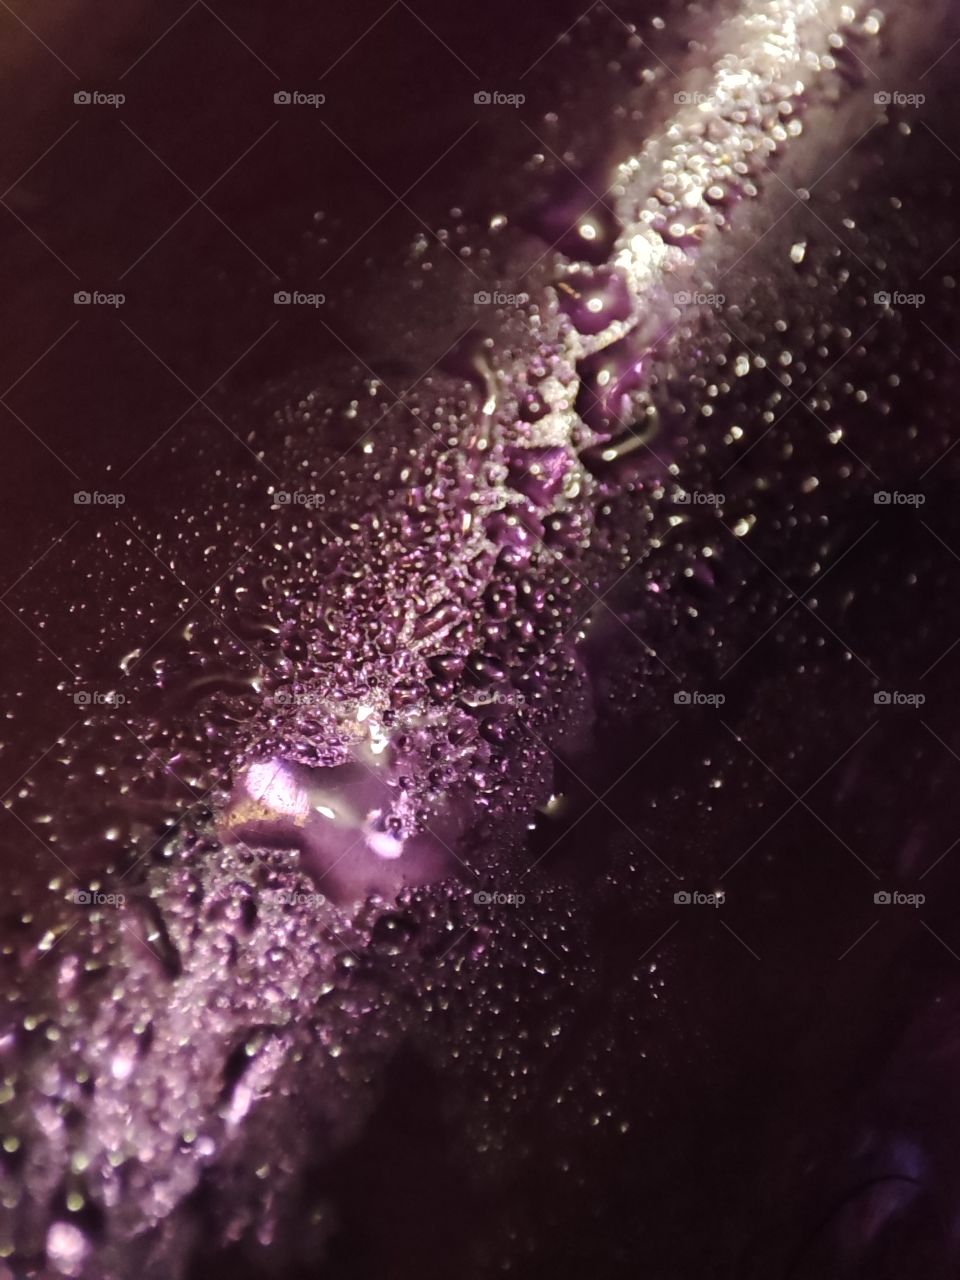 Purple water droplets